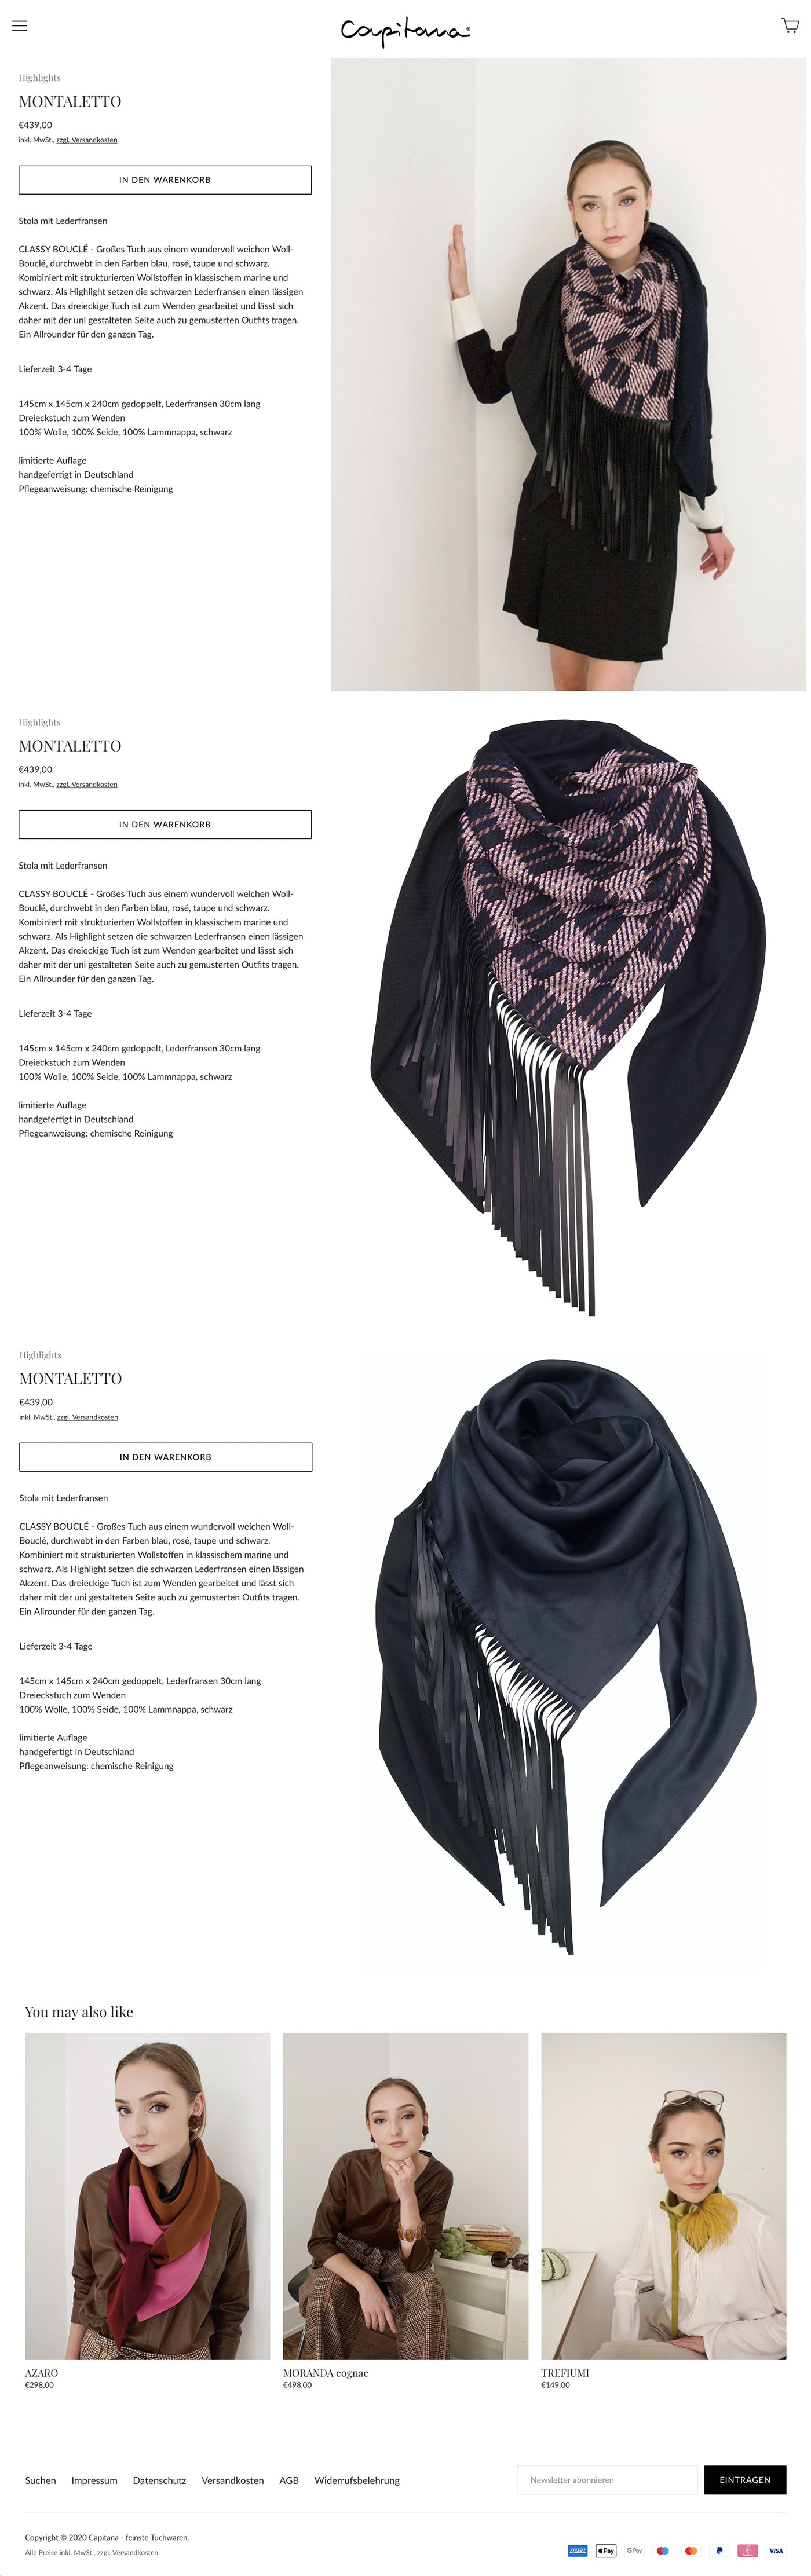 Erstellung innovativer Onlineshop für luxuriöse Mode-Accessoires durch Webdesigner Ronald Wissler aus Frankfurt am Main